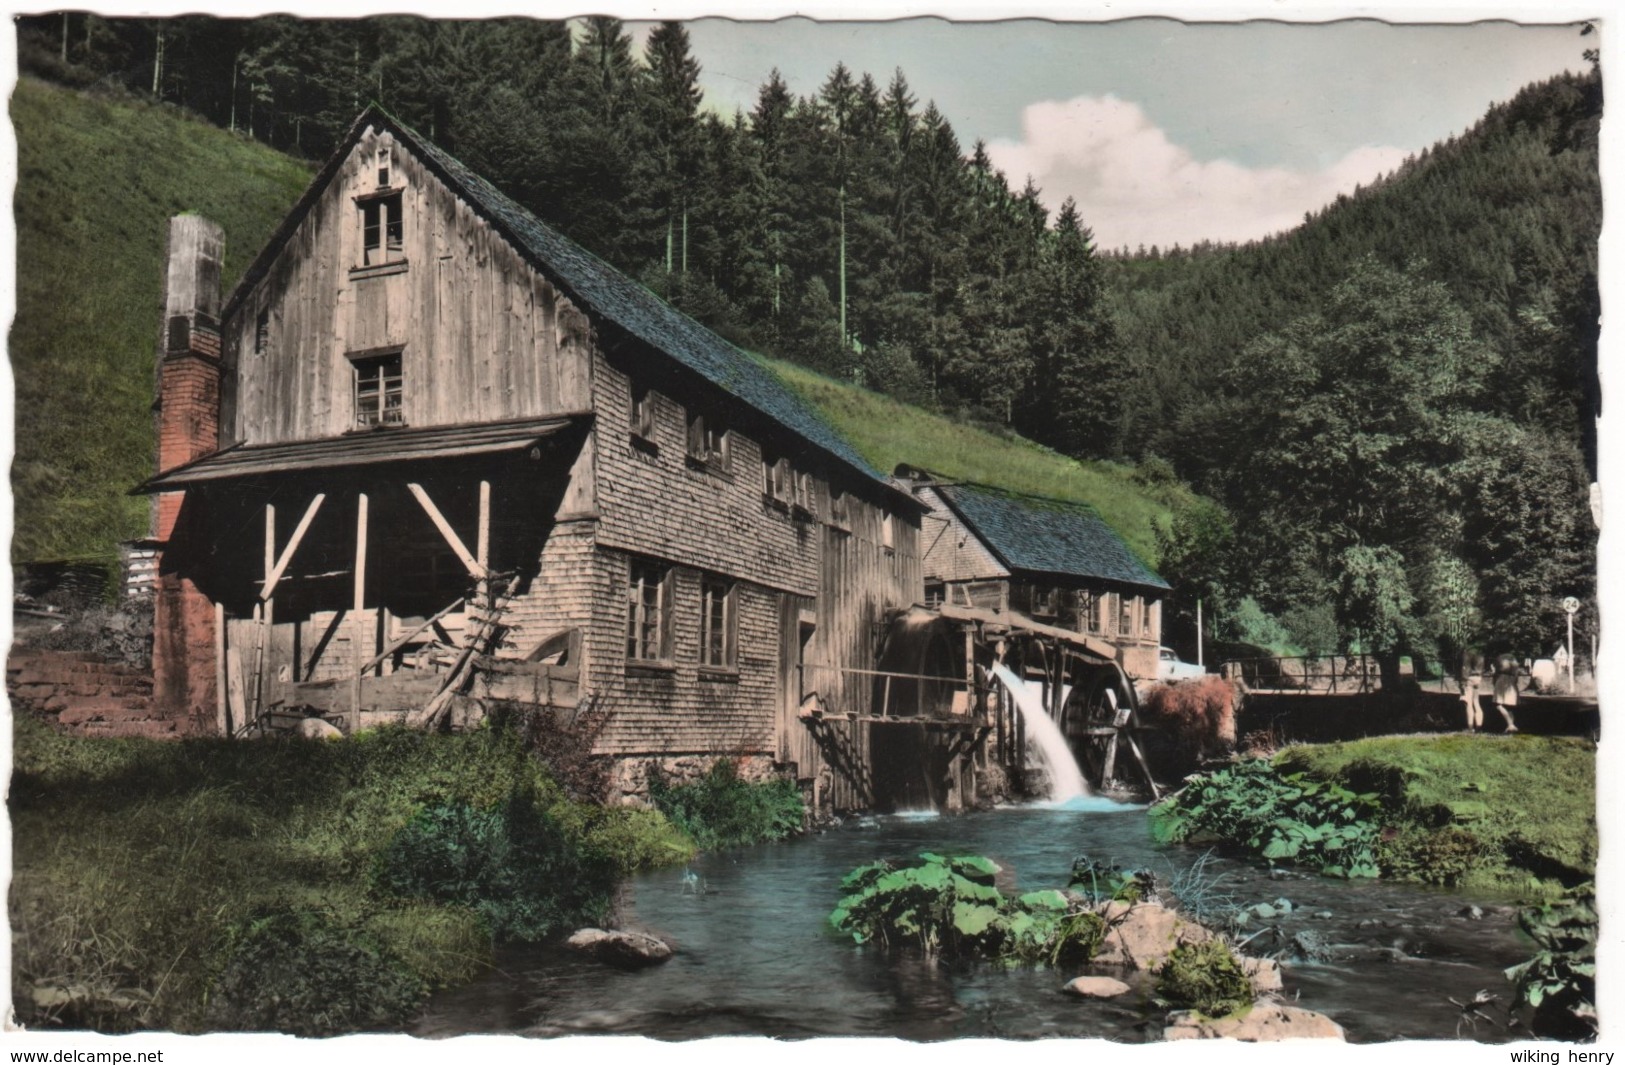 Furtwangen Neukirch - Hexenlochmühle 1   Wassermühle - Furtwangen